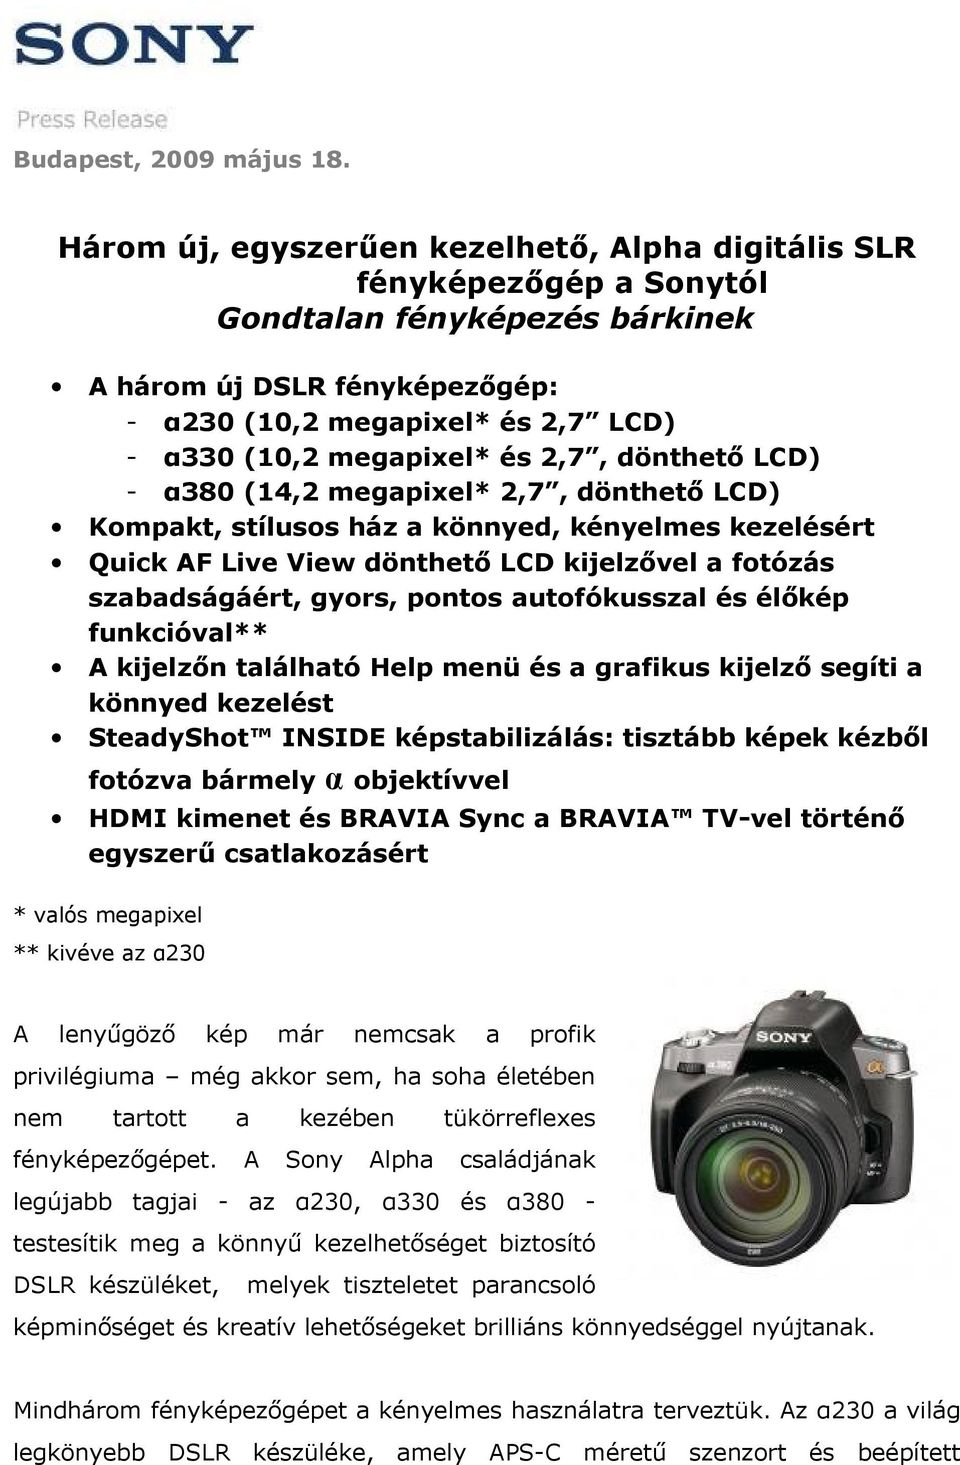 Három új, egyszerűen kezelhető, Alpha digitális SLR fényképezőgép a Sonytól  Gondtalan fényképezés bárkinek - PDF Free Download